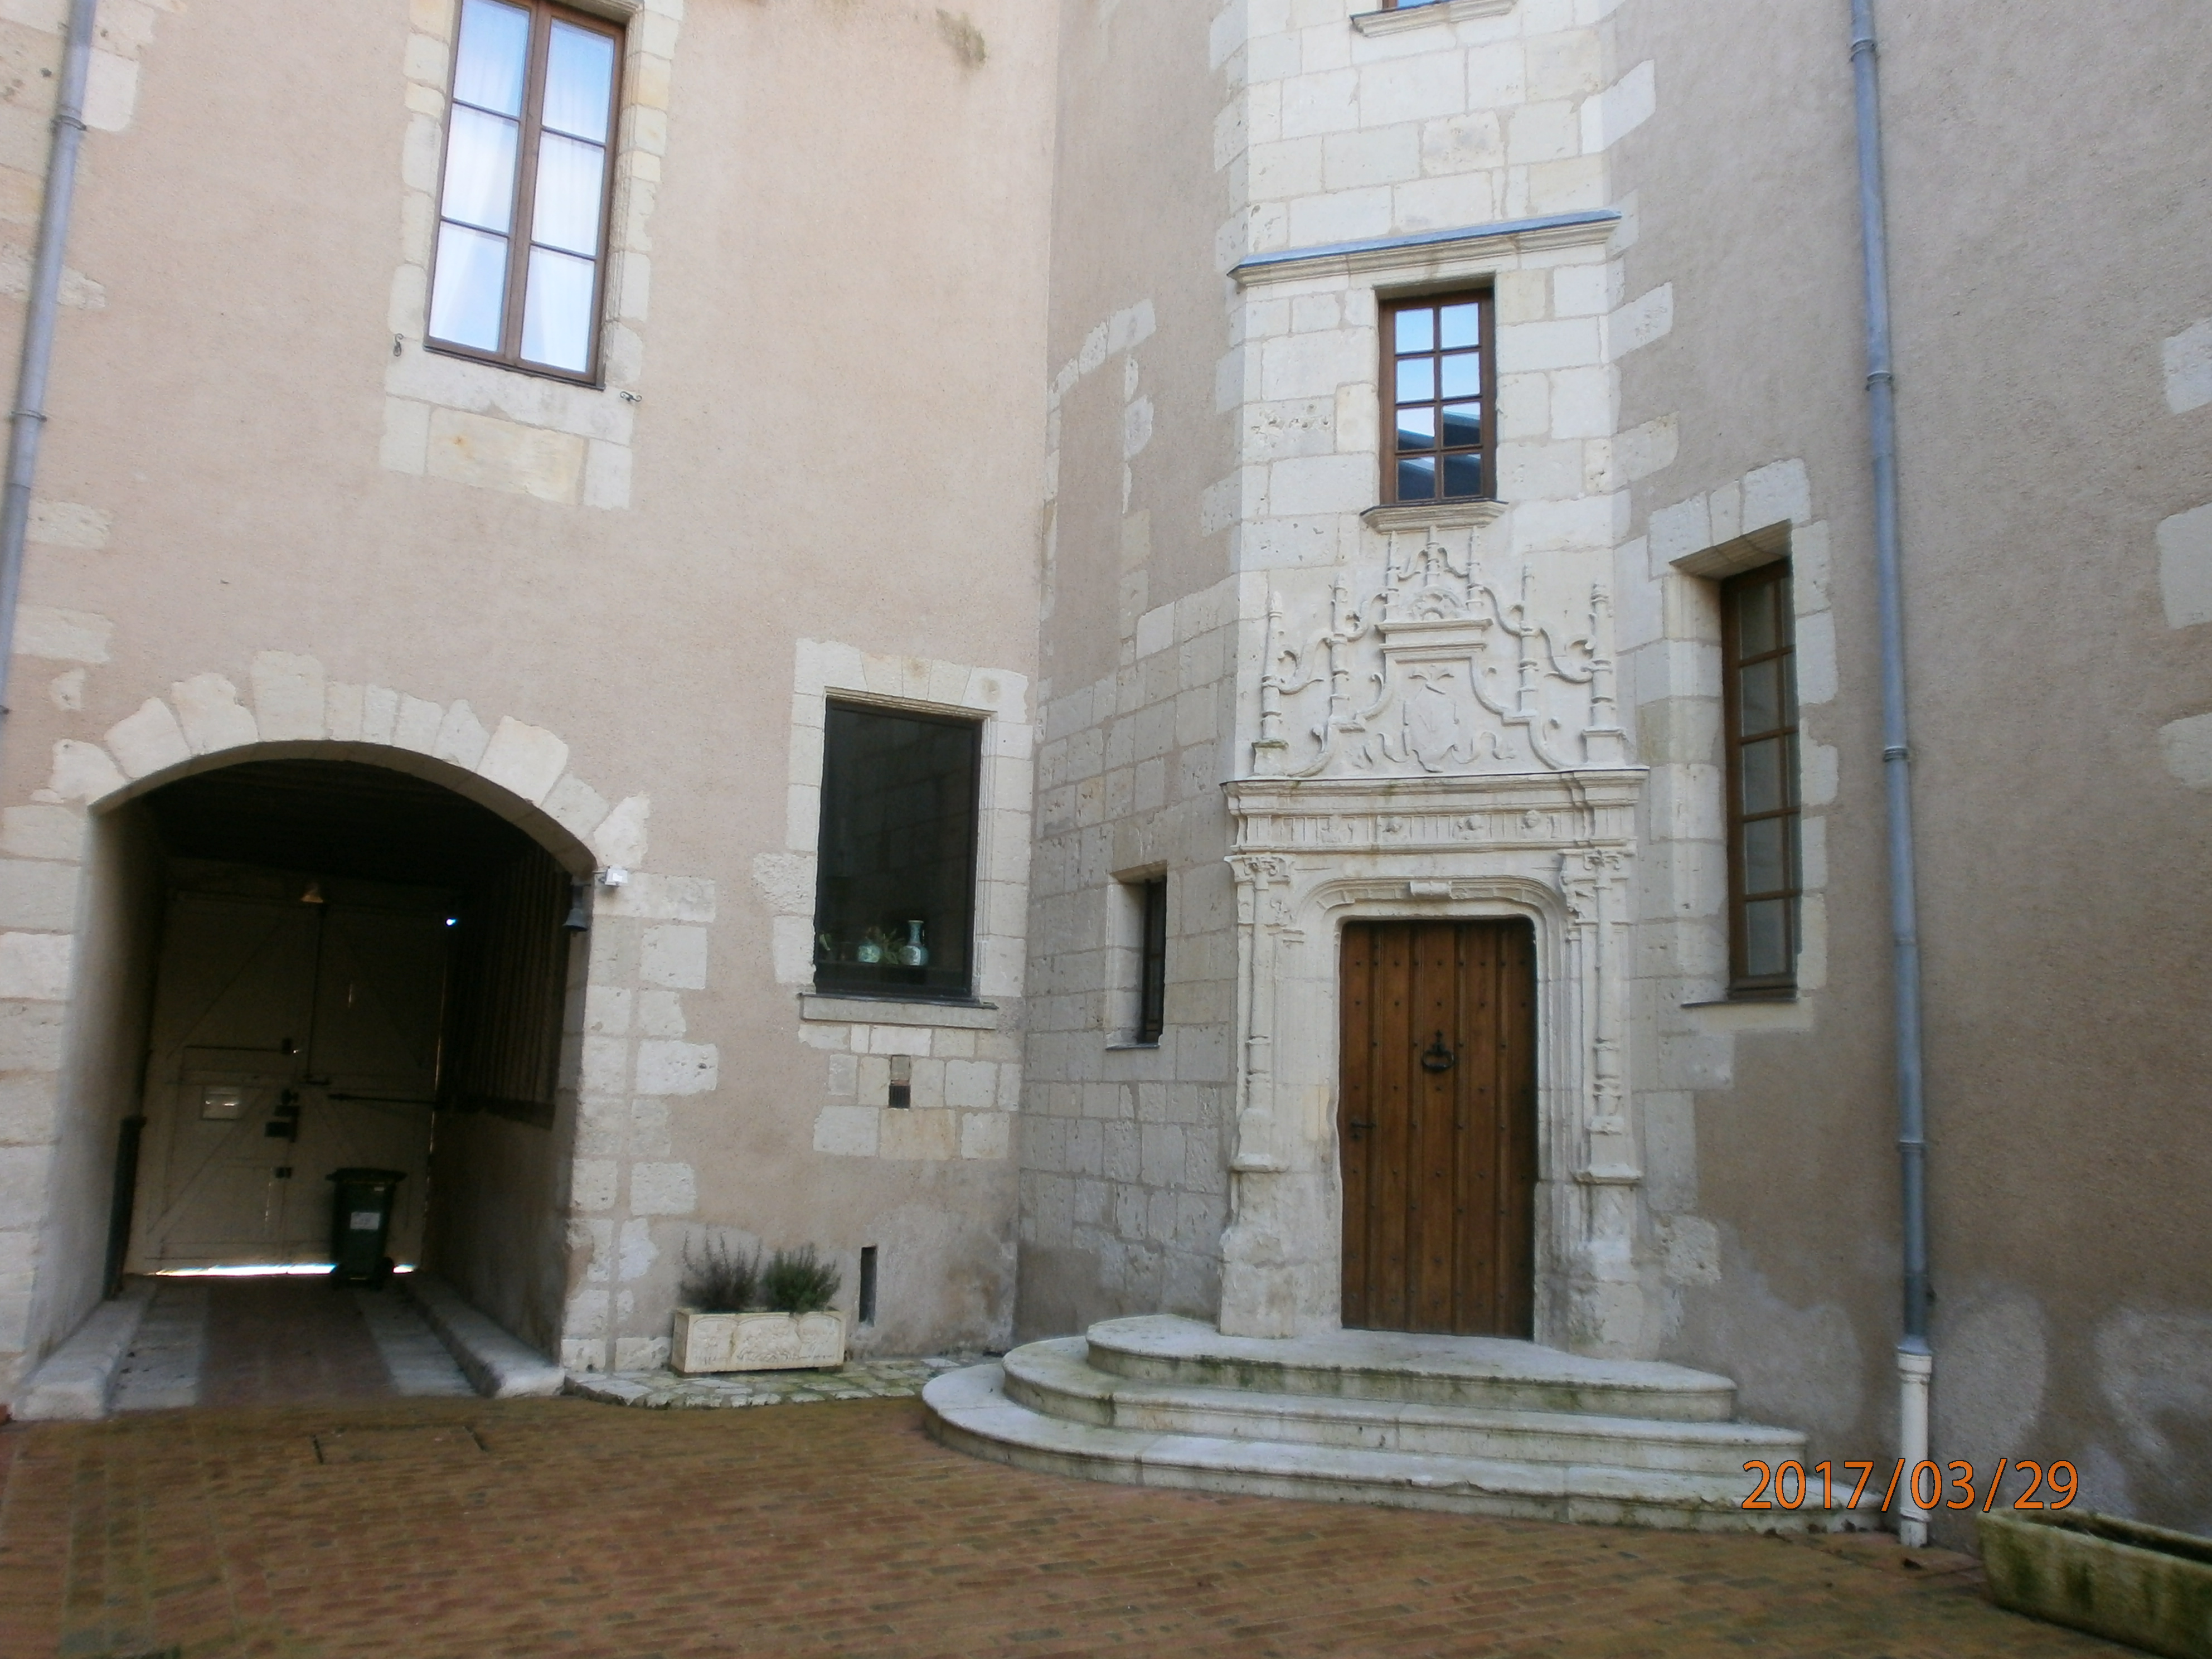 Maison Renaissance  France Centre-Val de Loire Loir-et-Cher Montoire-sur-le-Loir 41800